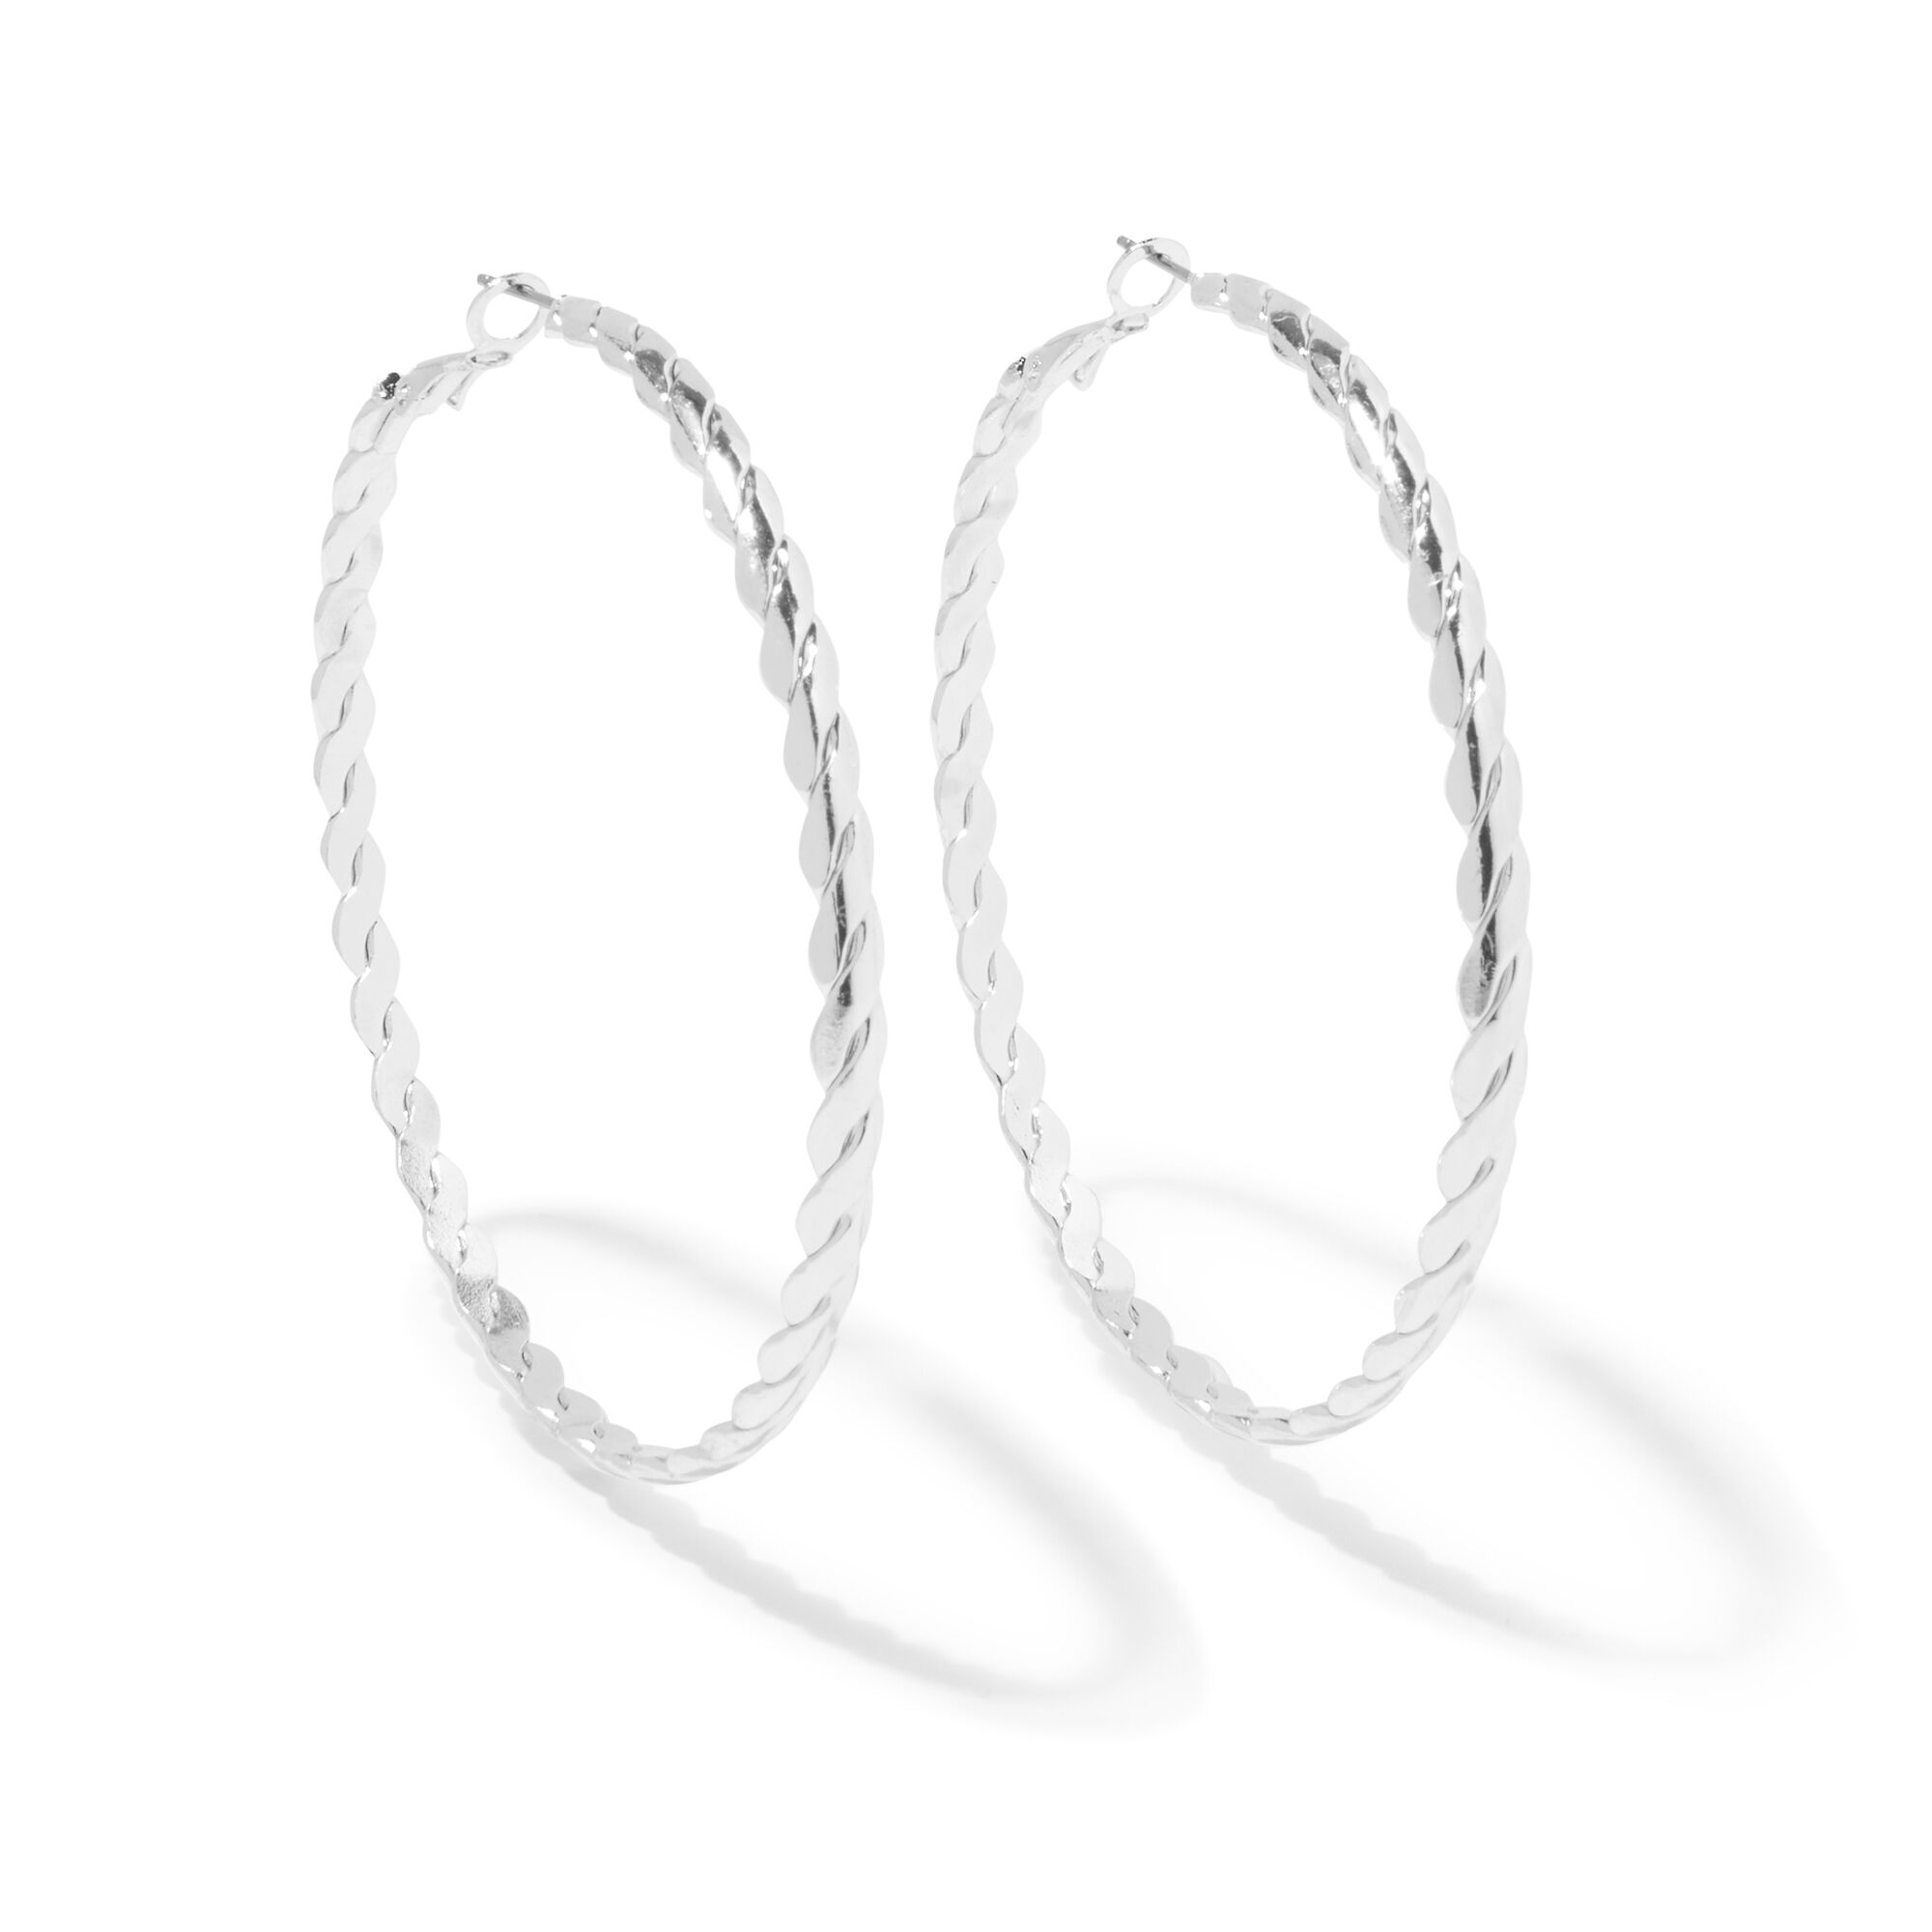 Buy Big Hoop Earrings, Stainless Steel Big Hoop Earrings Silver Gold  Hypoenic Earrings Big Earrings for Women Girls Gift (50/60/70MM) Online at  desertcartEGYPT